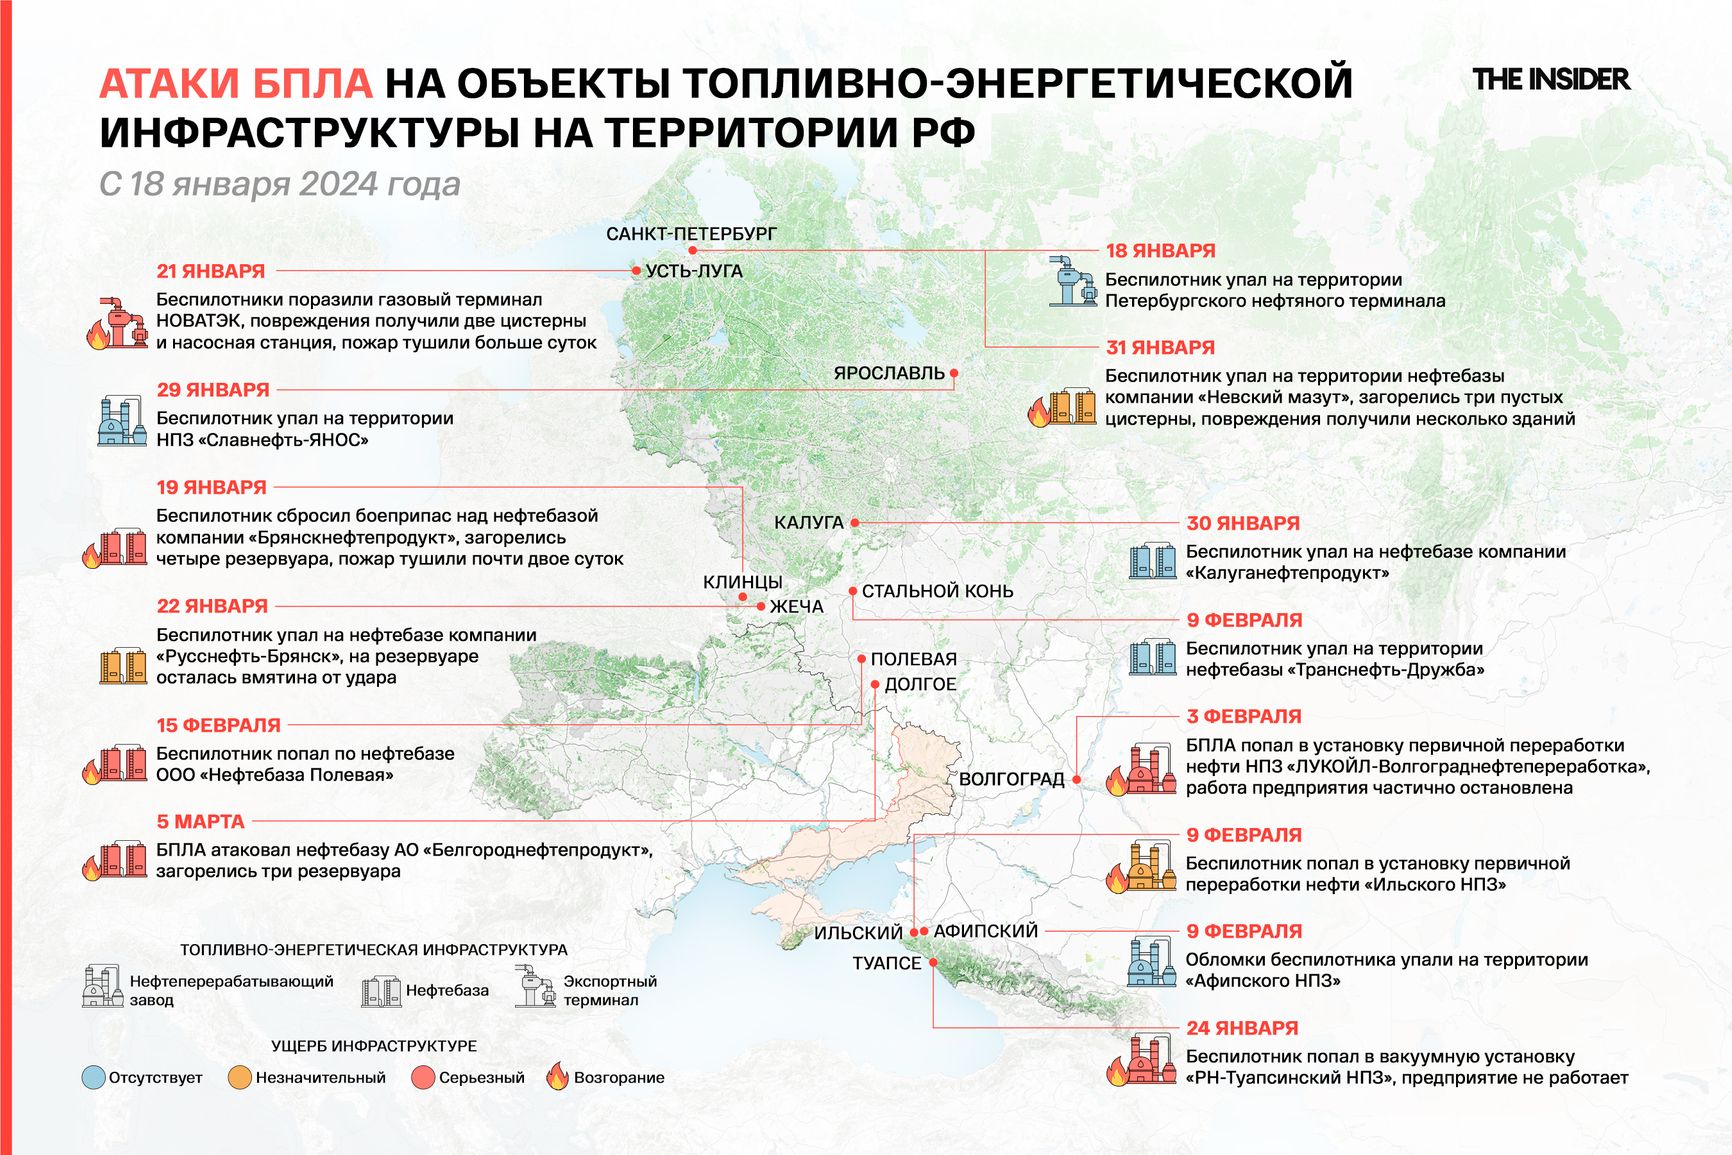 Атаки БПЛА на объекты топливно-энергетической инфраструктуры на территории РФ